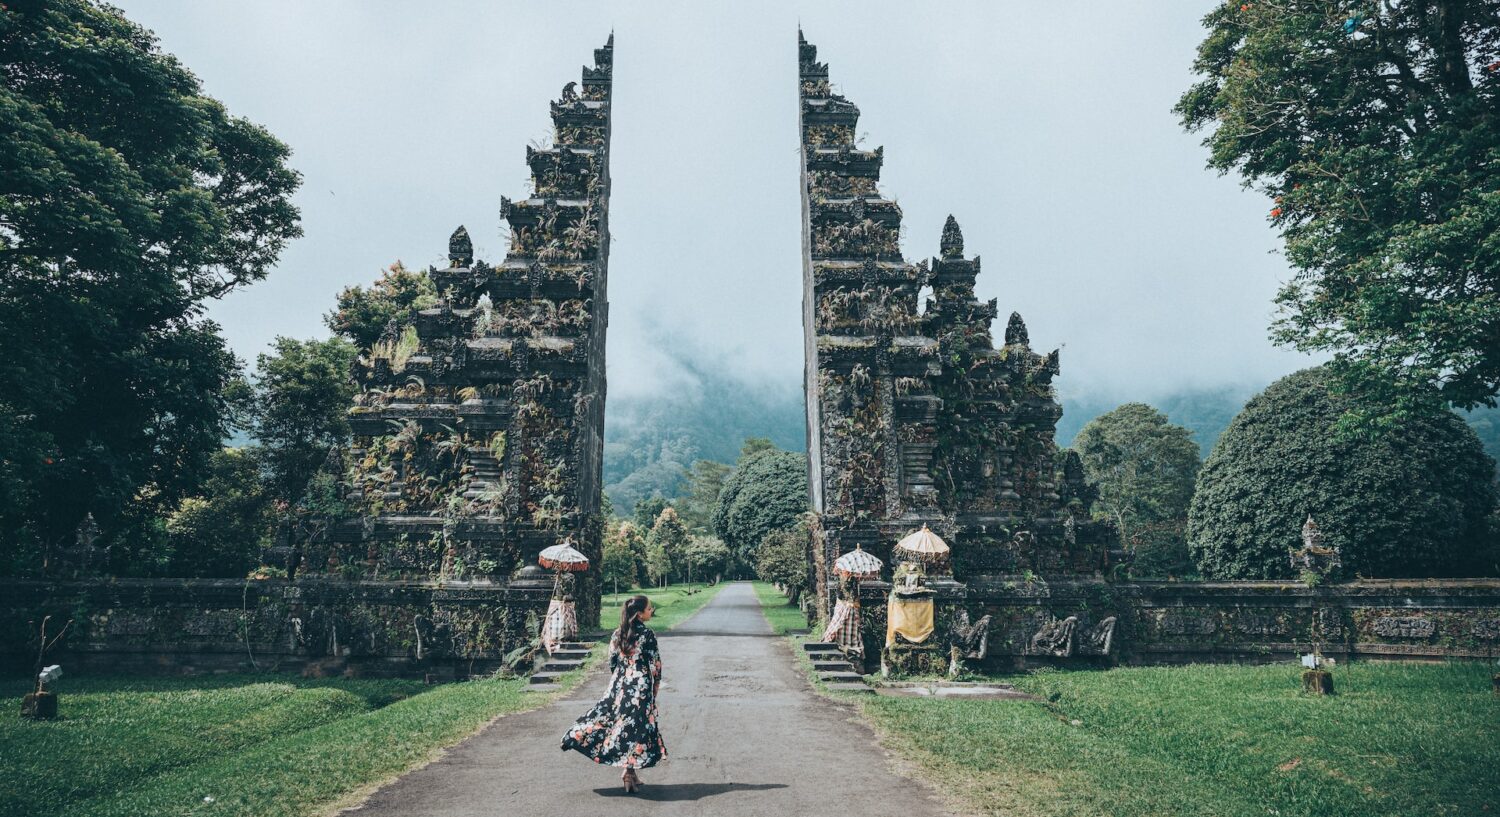 pessoa com roupas de tecidos esvoaçantes caminhando em direção a um portal de pedra ricamente trabalhado no Tempo Lempuyang, com grama verdinha ao redor, para ilustrar o post de chip celular Bali